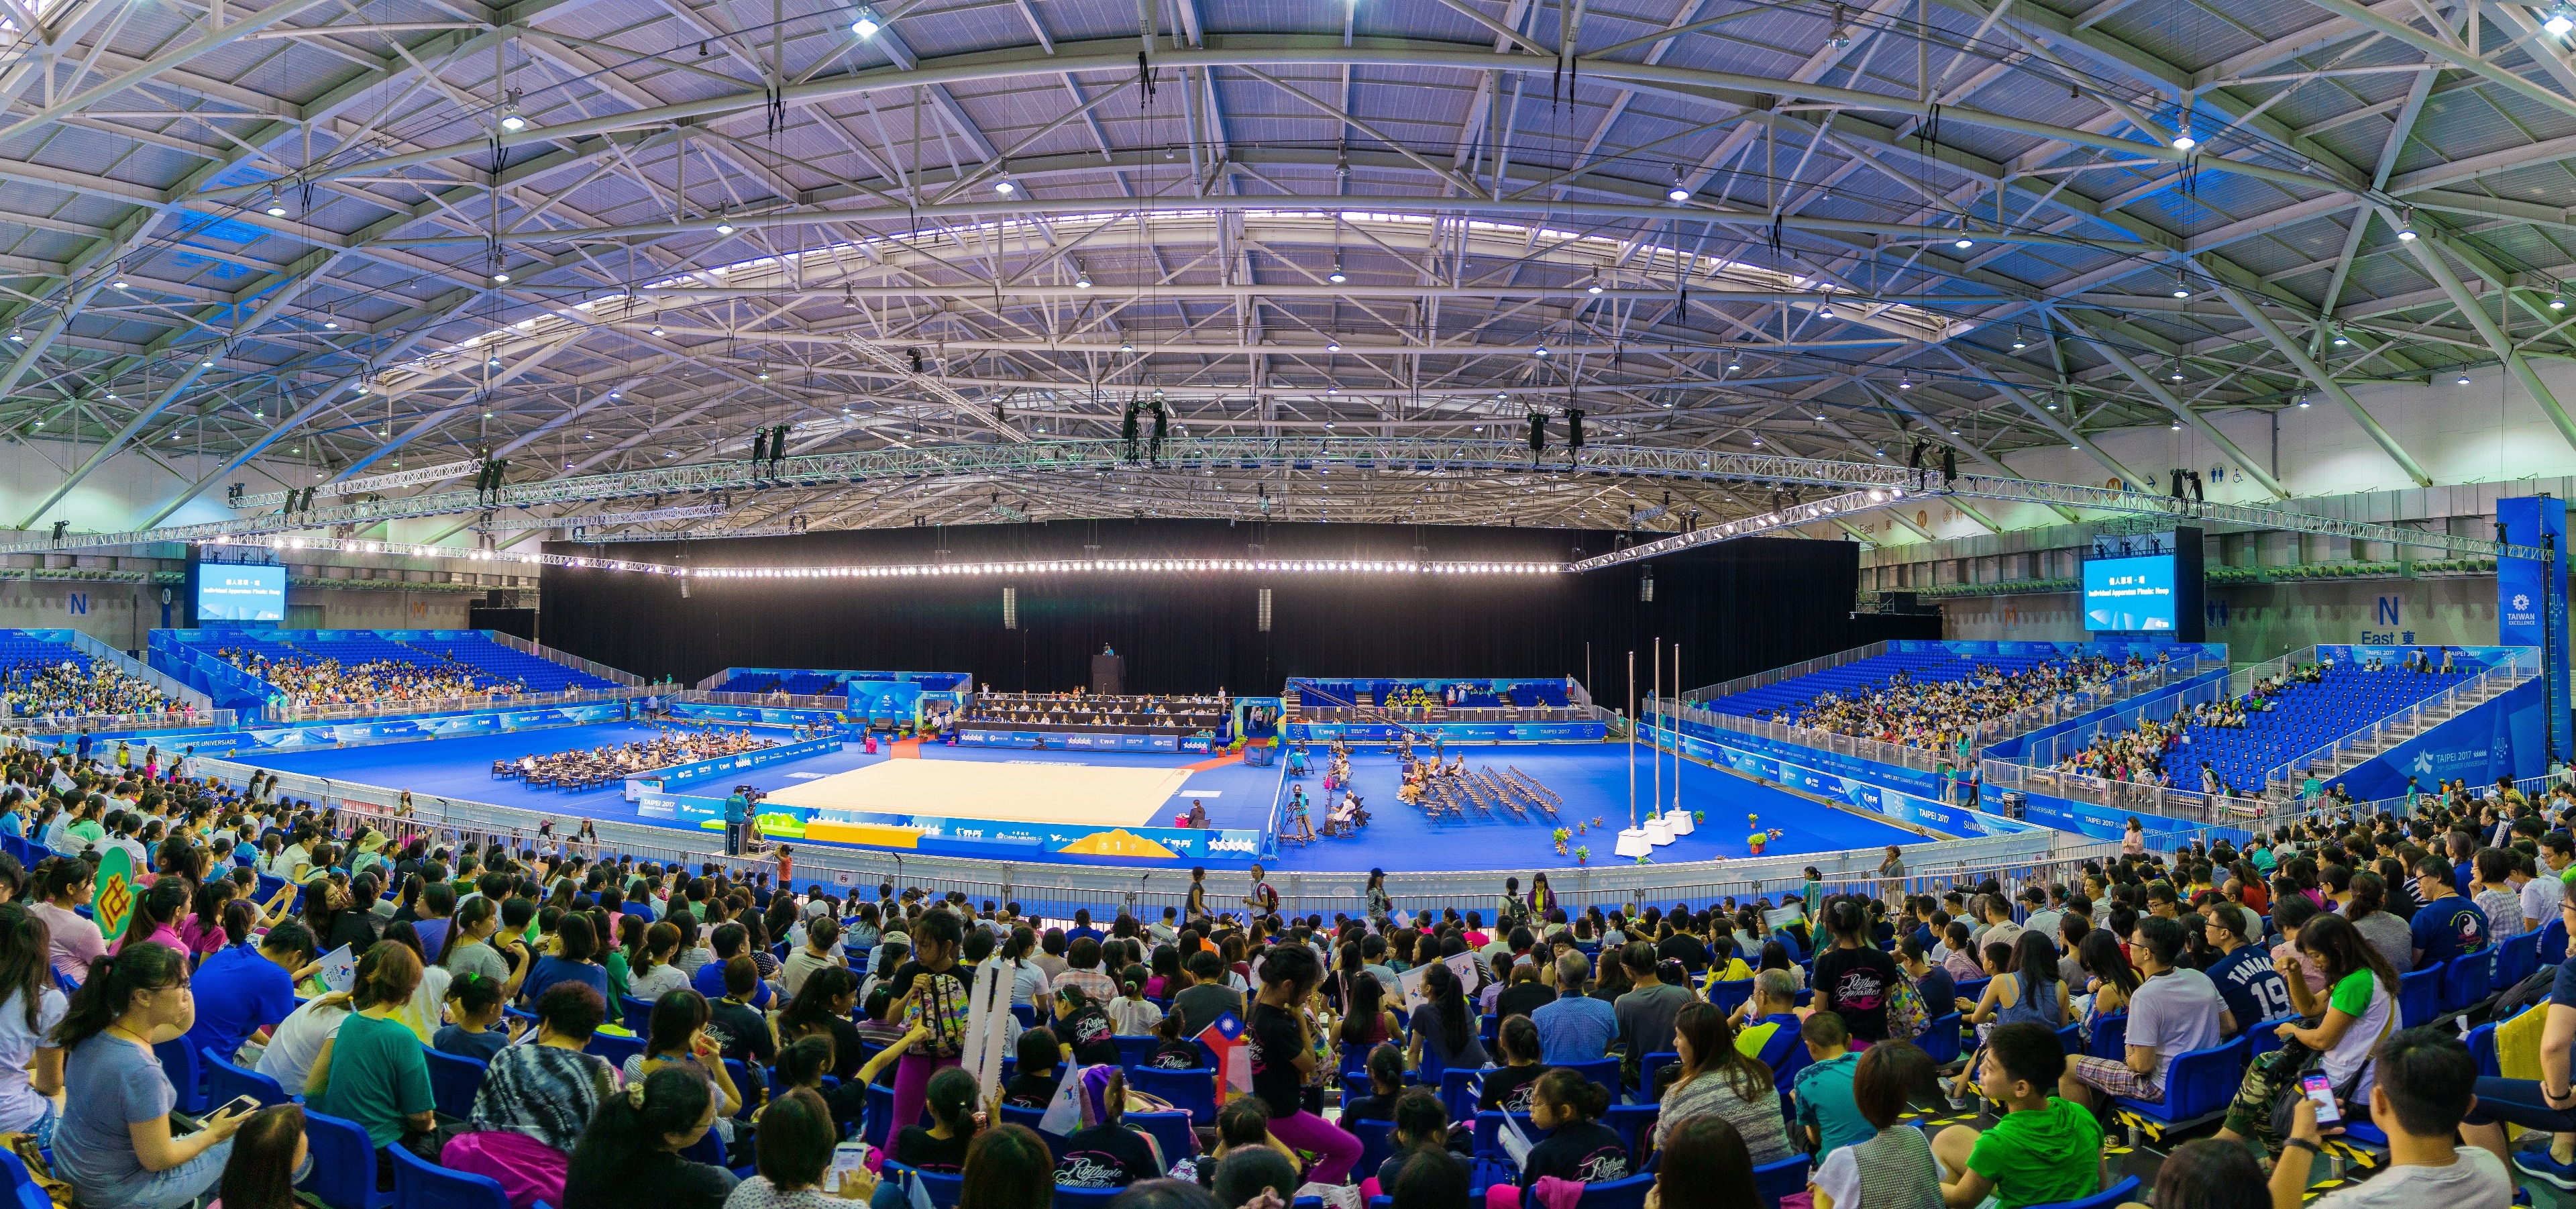 2017 Taipei Summer Universiade